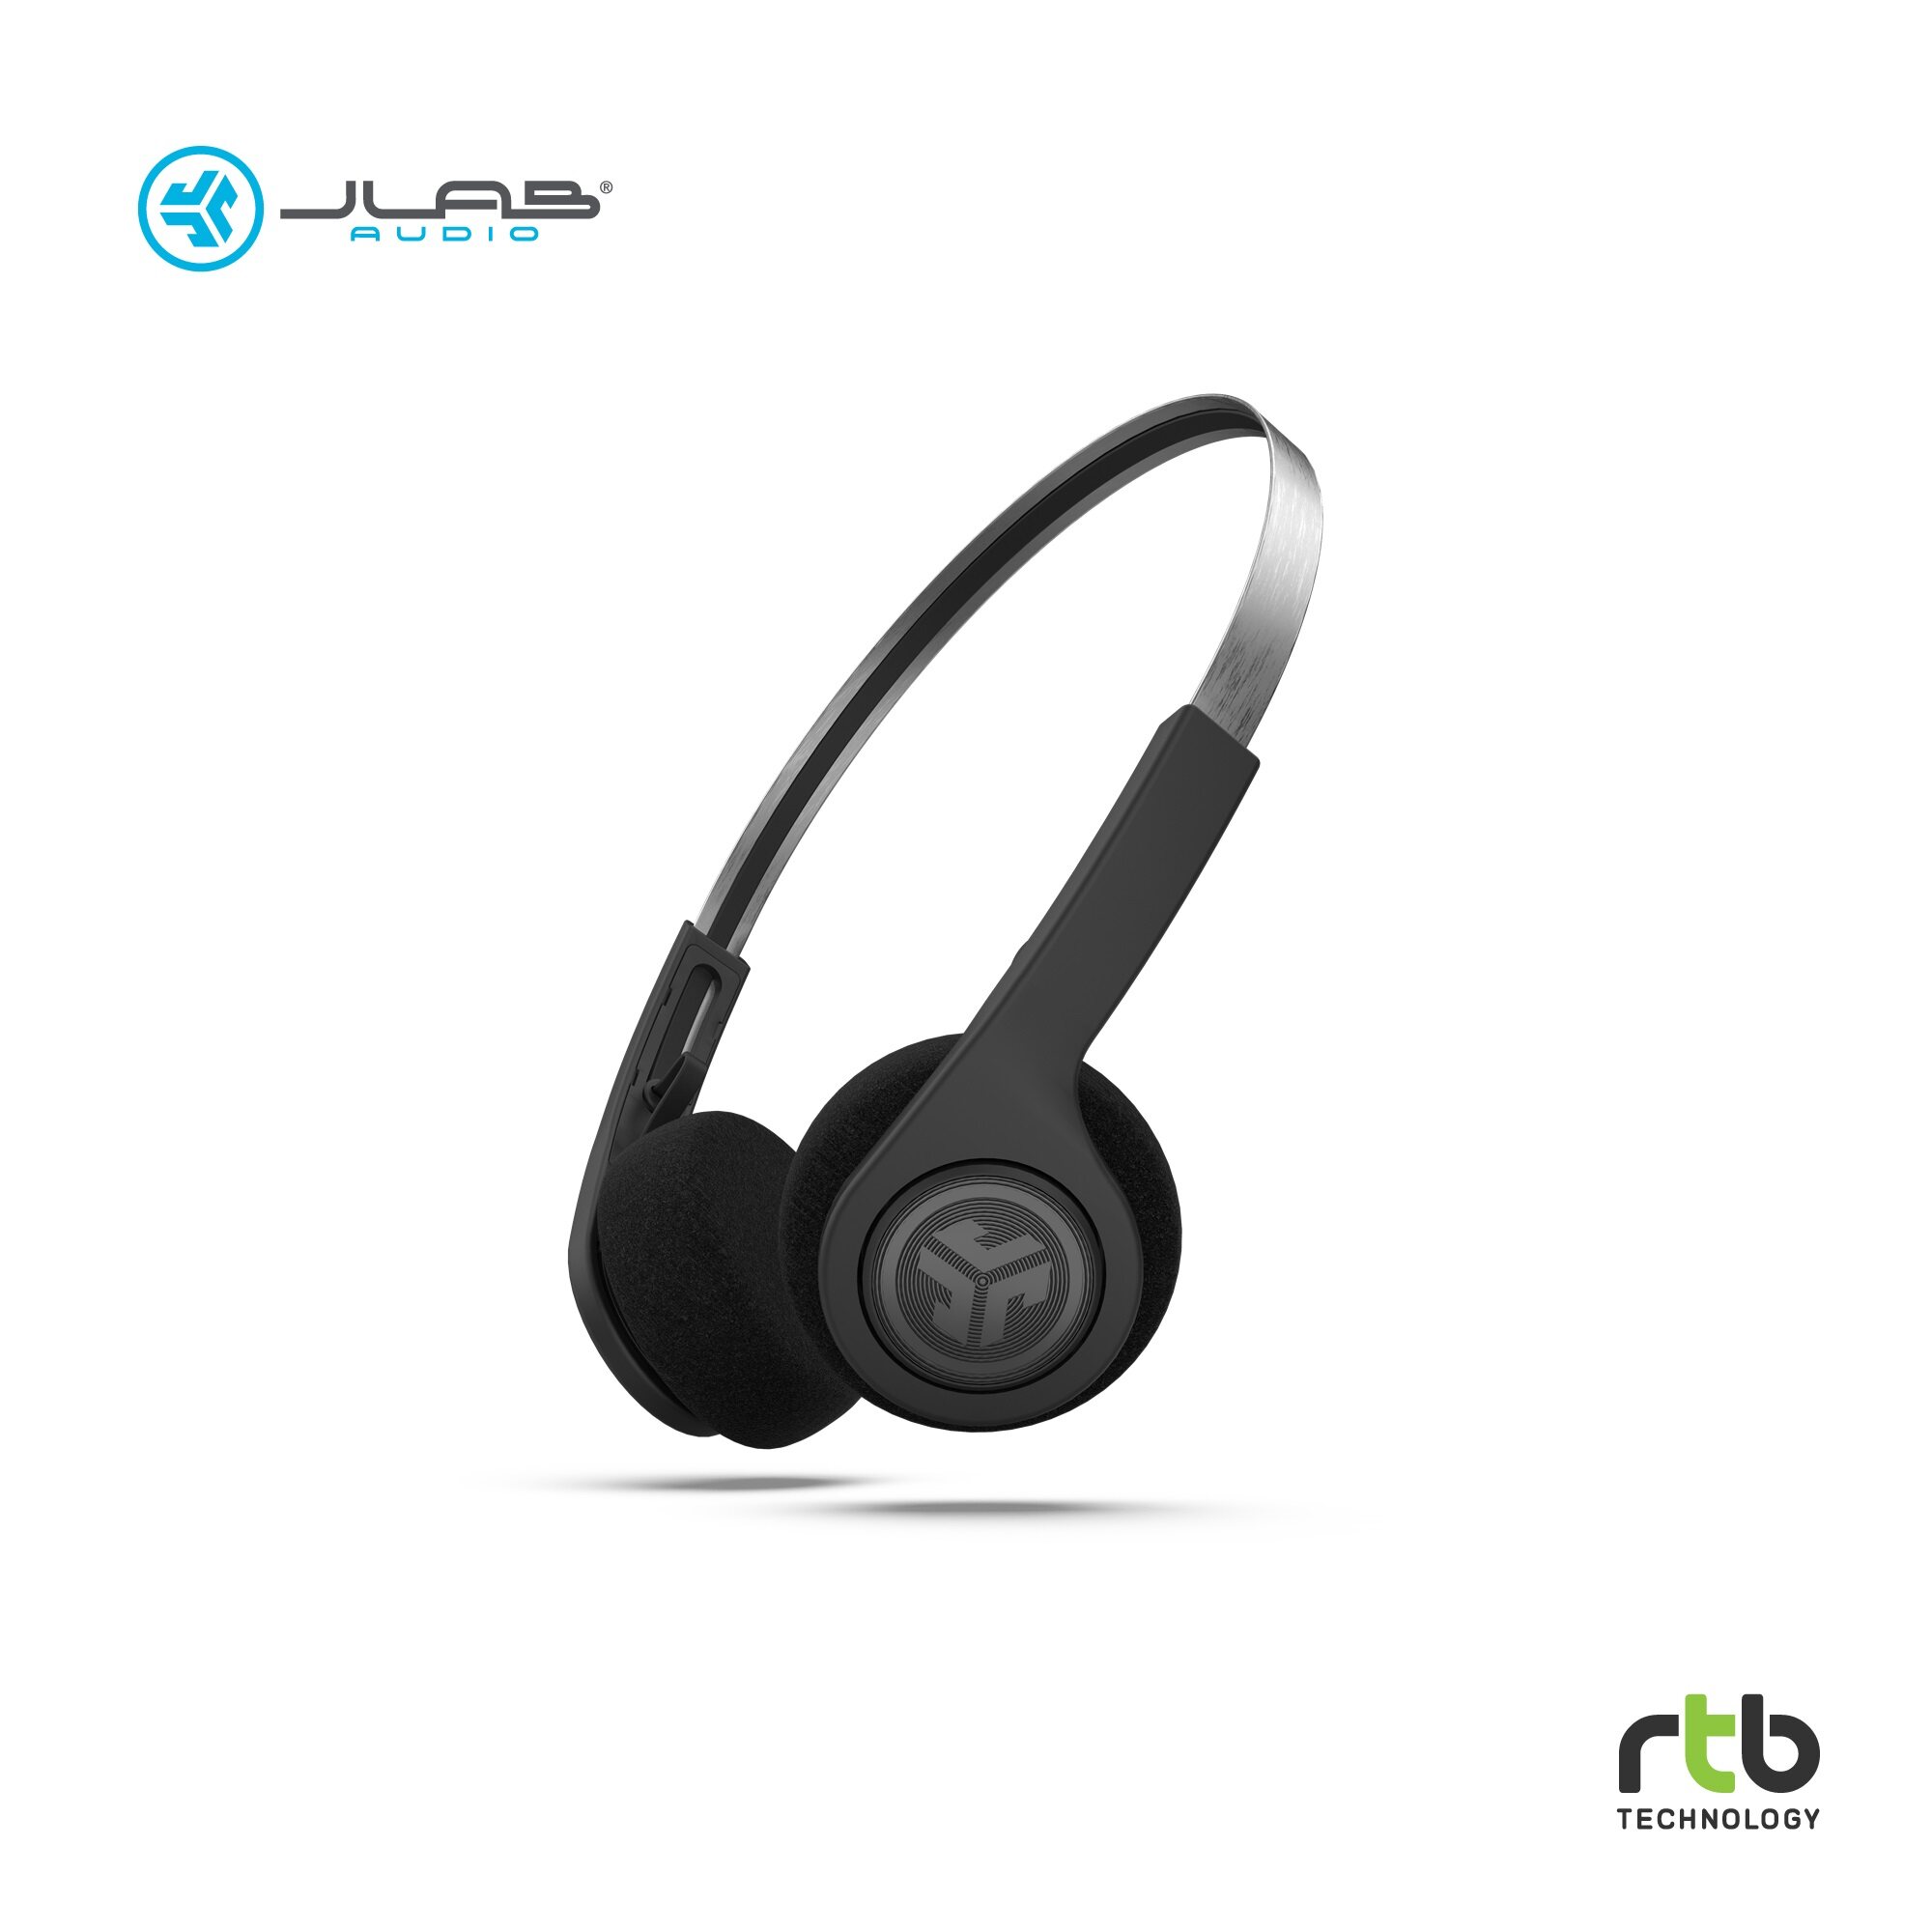 JLAB หูฟัง Wireless Retro รุ่น Rewind - Black